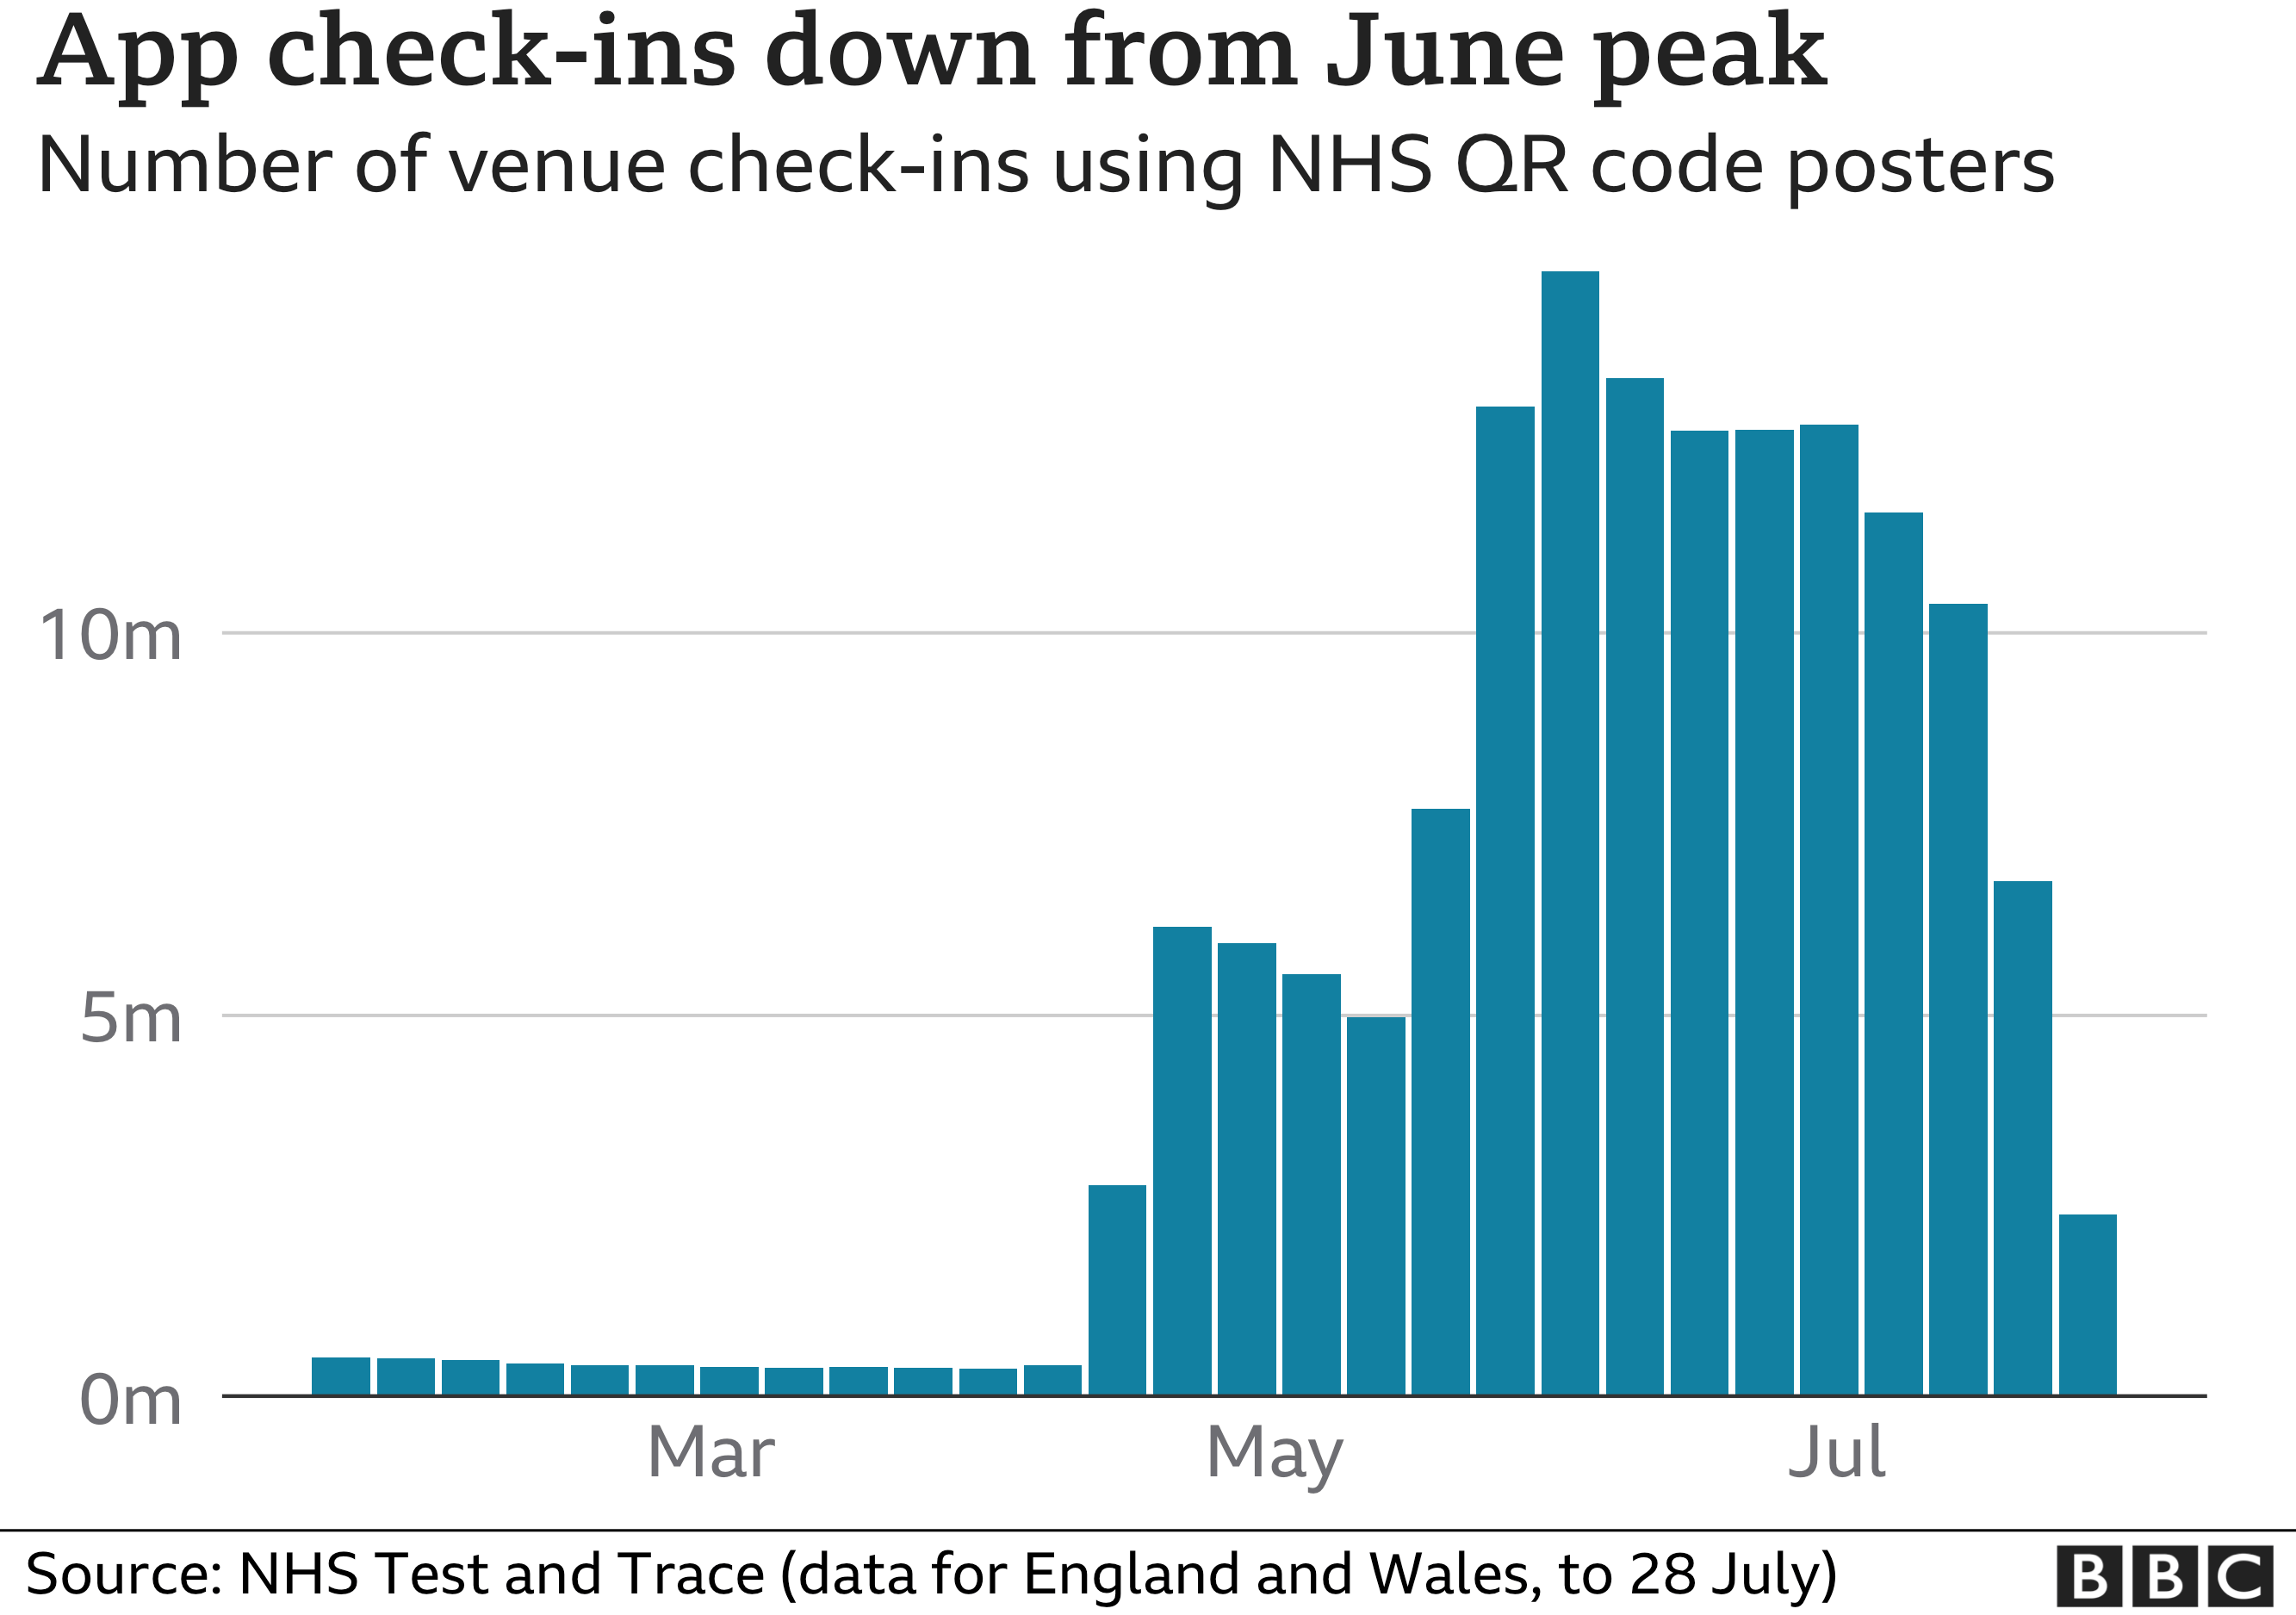 Диаграмма, показывающая количество посещений заведений, использующих приложение NHS, с резким падением за последнюю неделю, которое само упало за неделю до